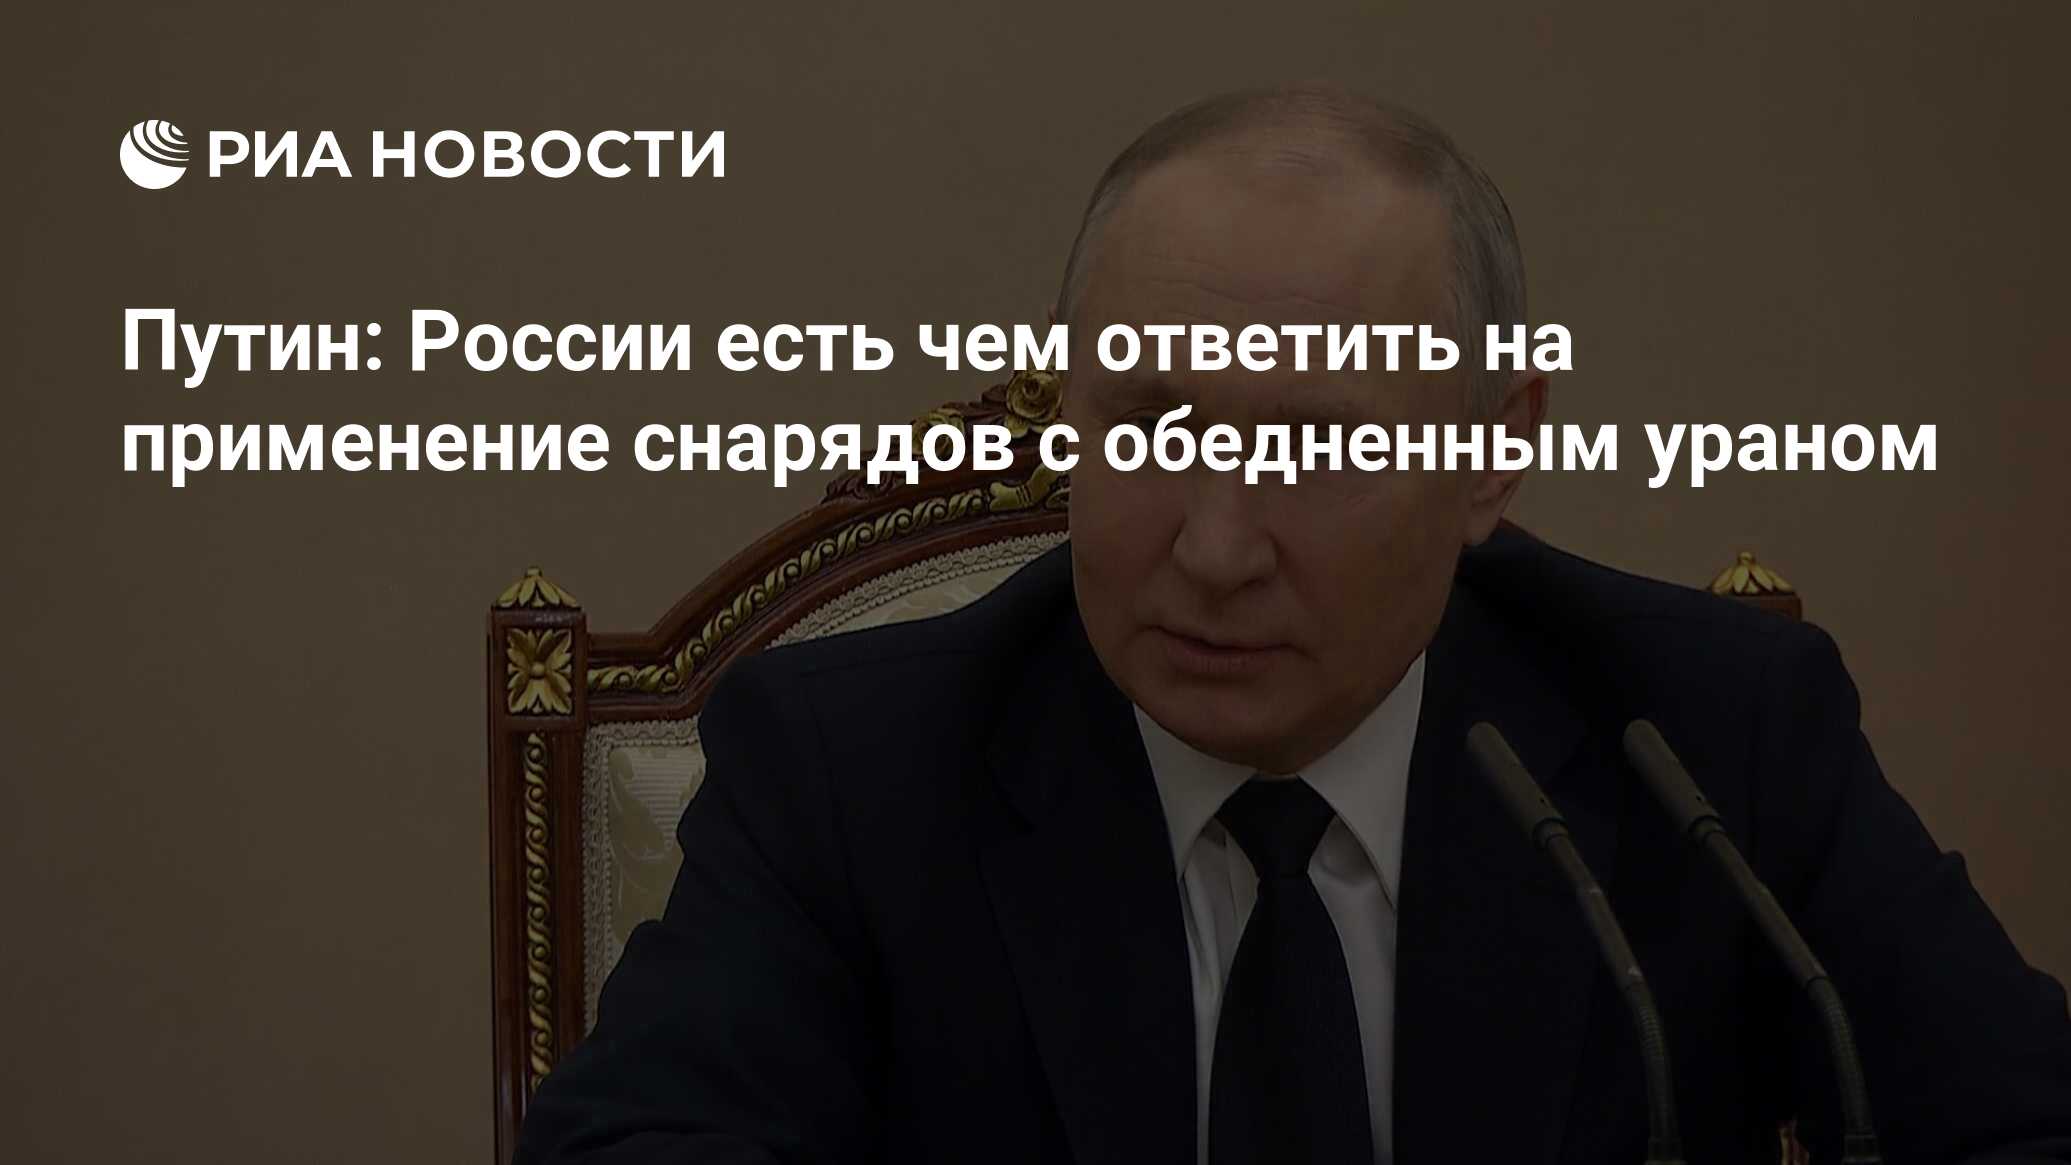 Россия ответит на применение боеприпасов с обедненным ураном, заявил Путин